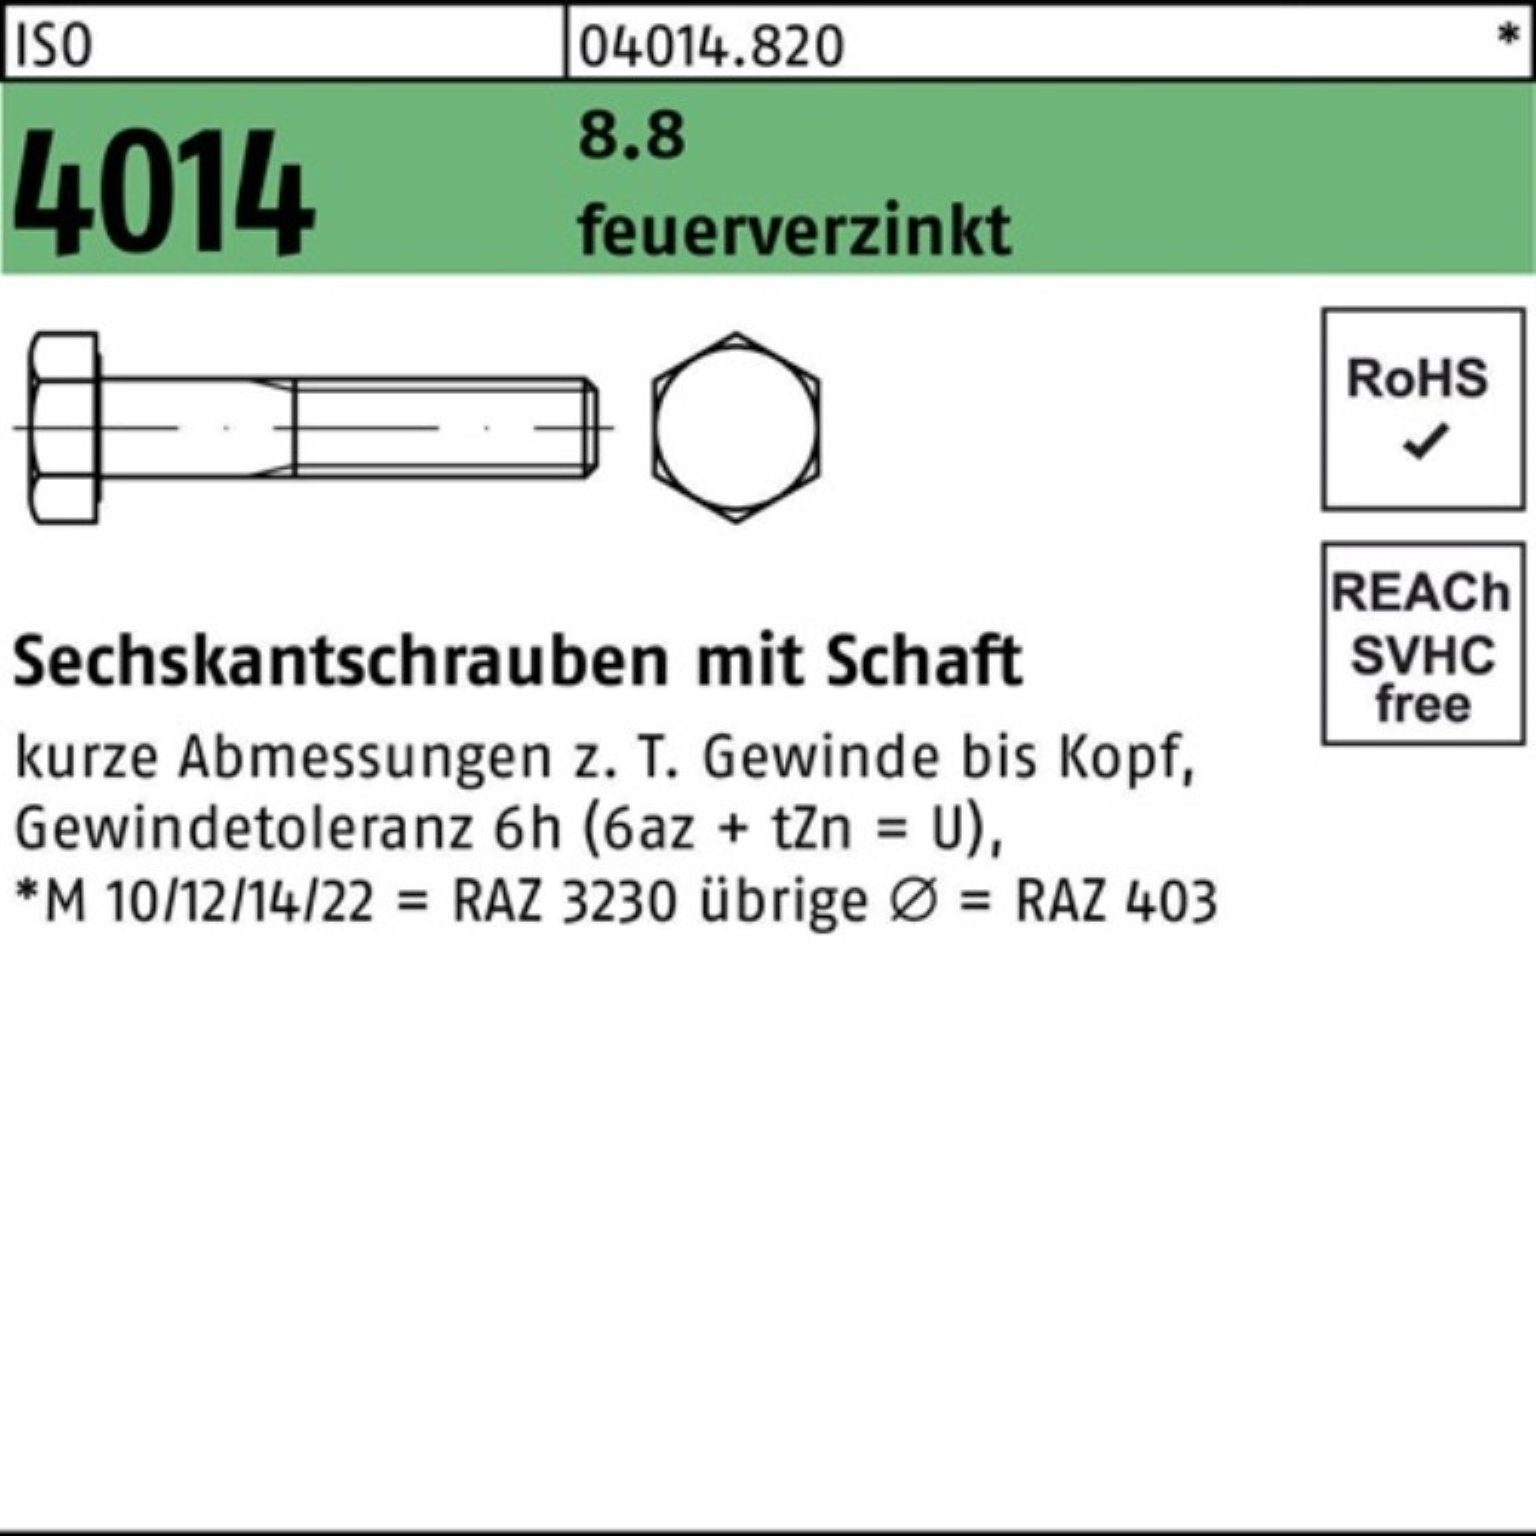 Pack Sechskantschraube Bufab Sechskantschraube feuerverz. 8.8 4014 Schaft M20x 2 ISO 100er 110